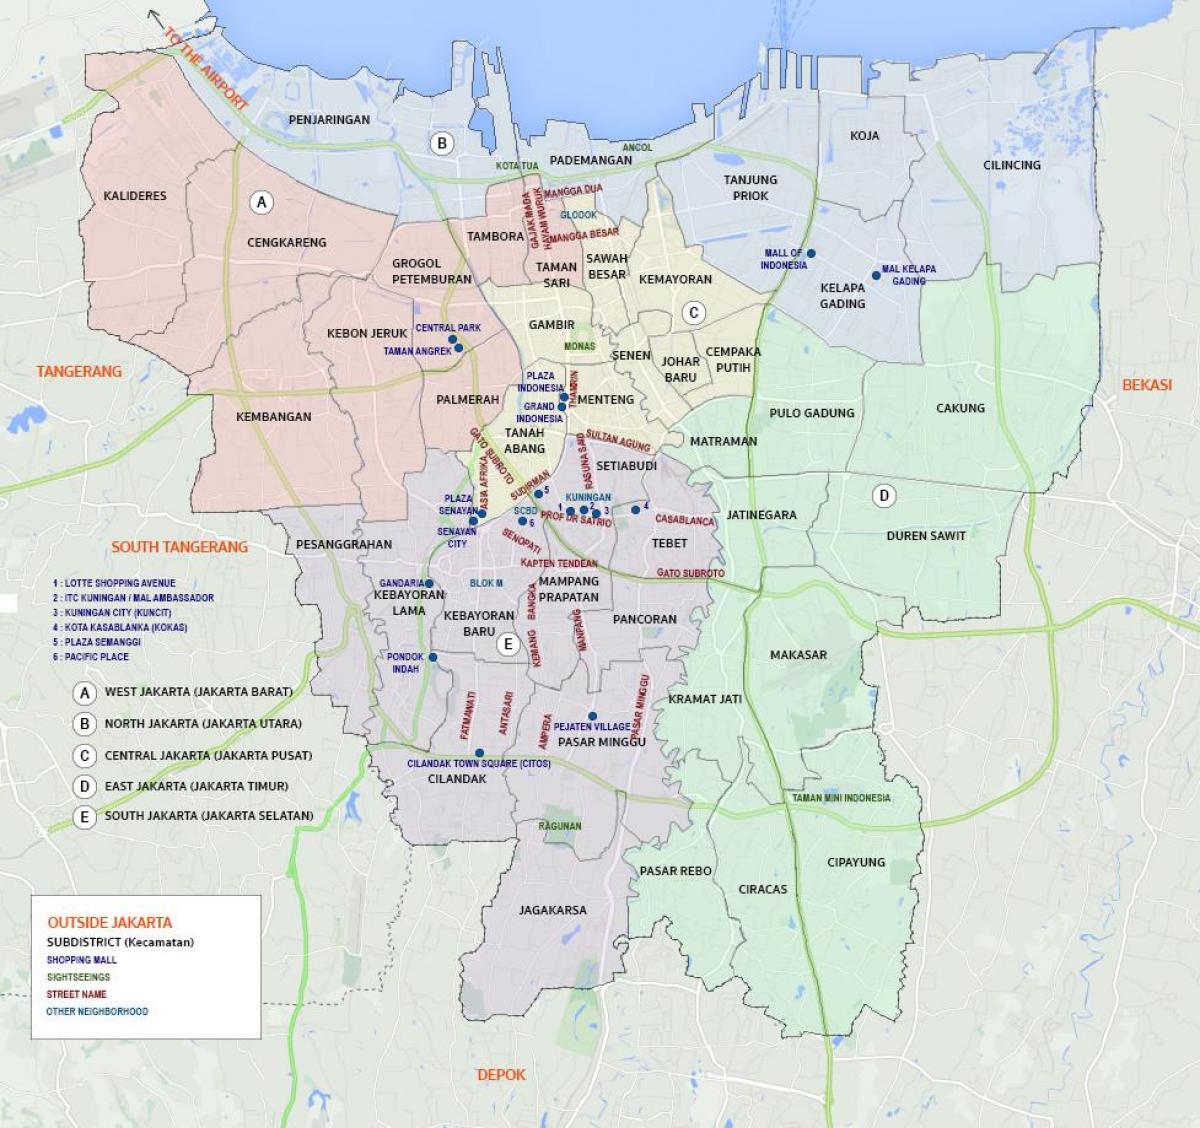 首都城市的印度尼西亚地图